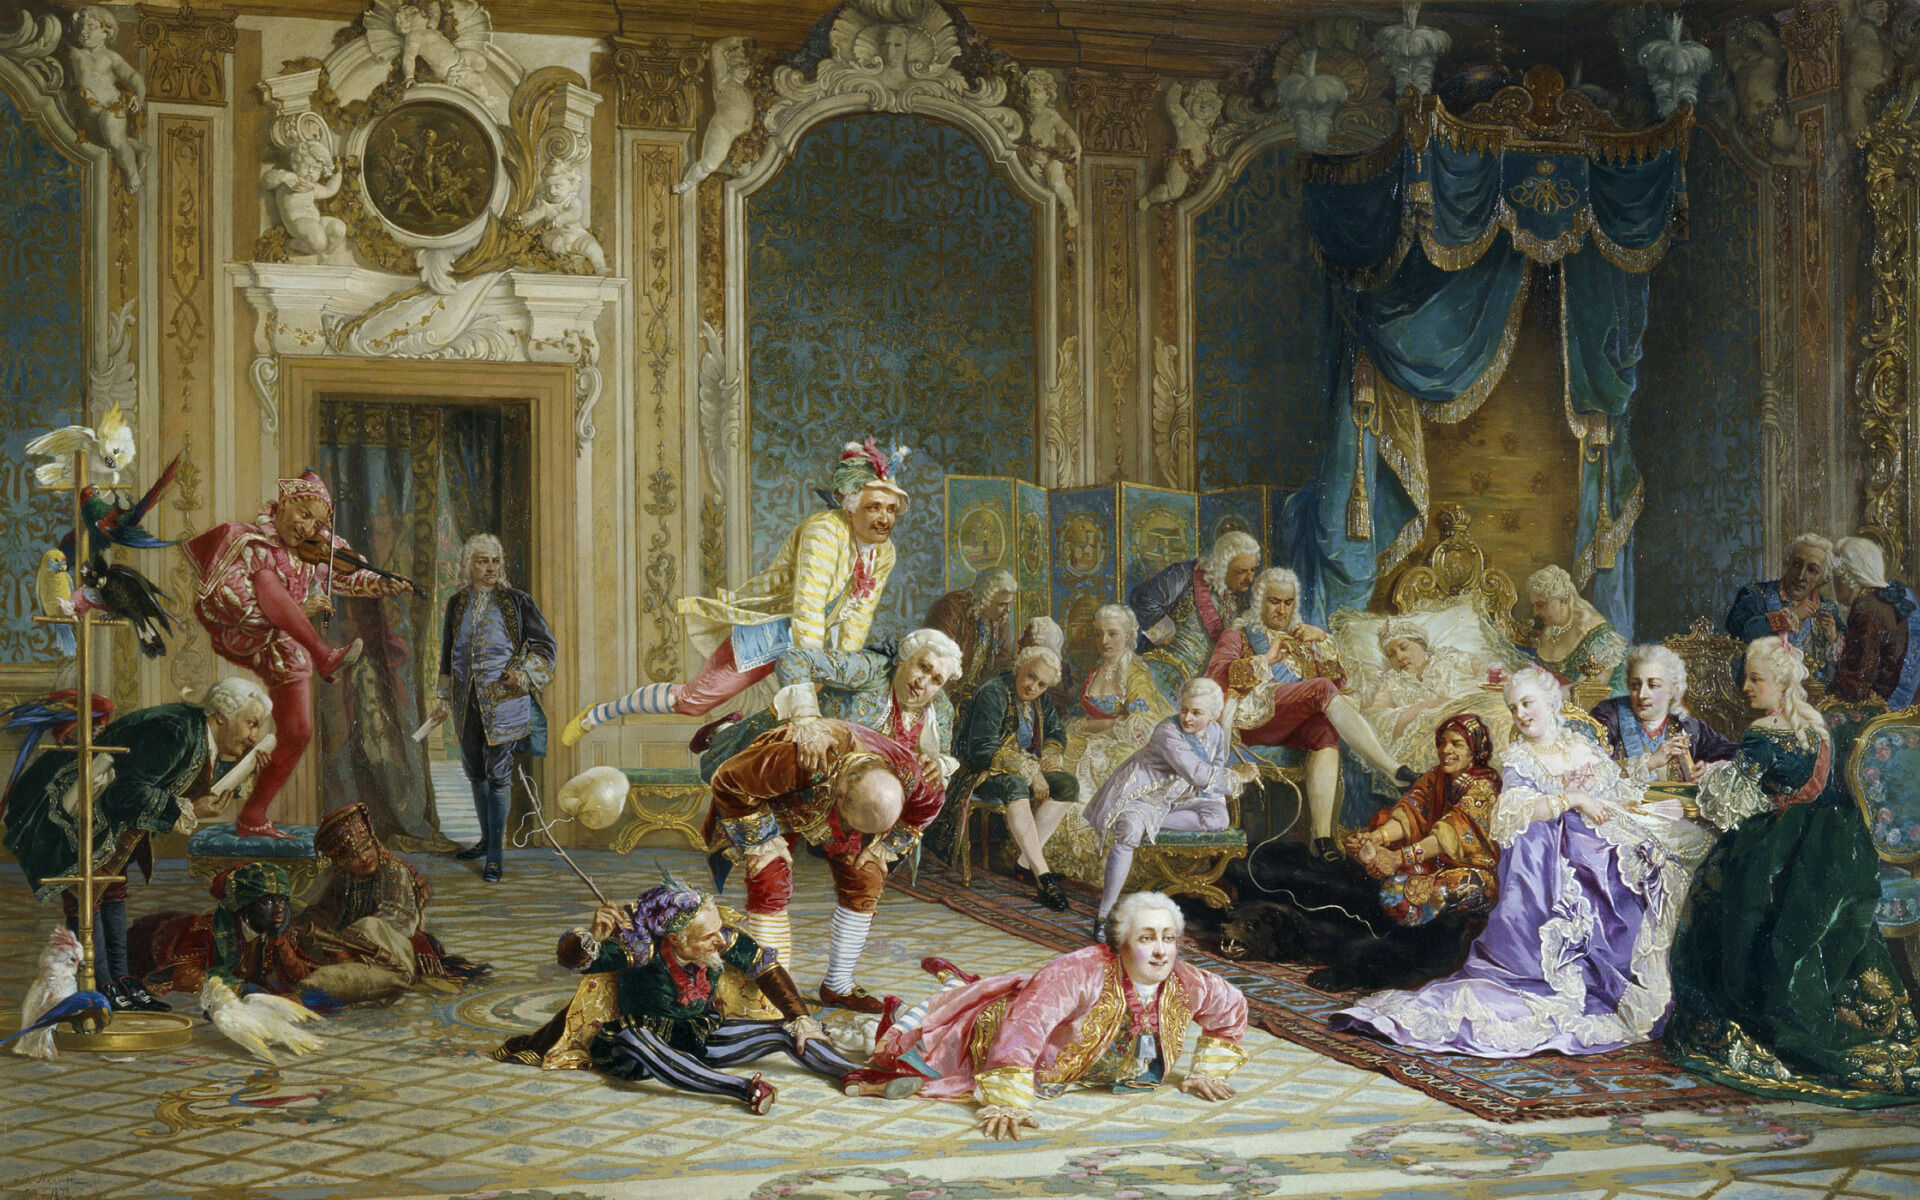 Картина В.Якоби "Шуты при дворе Анны Иоановны"